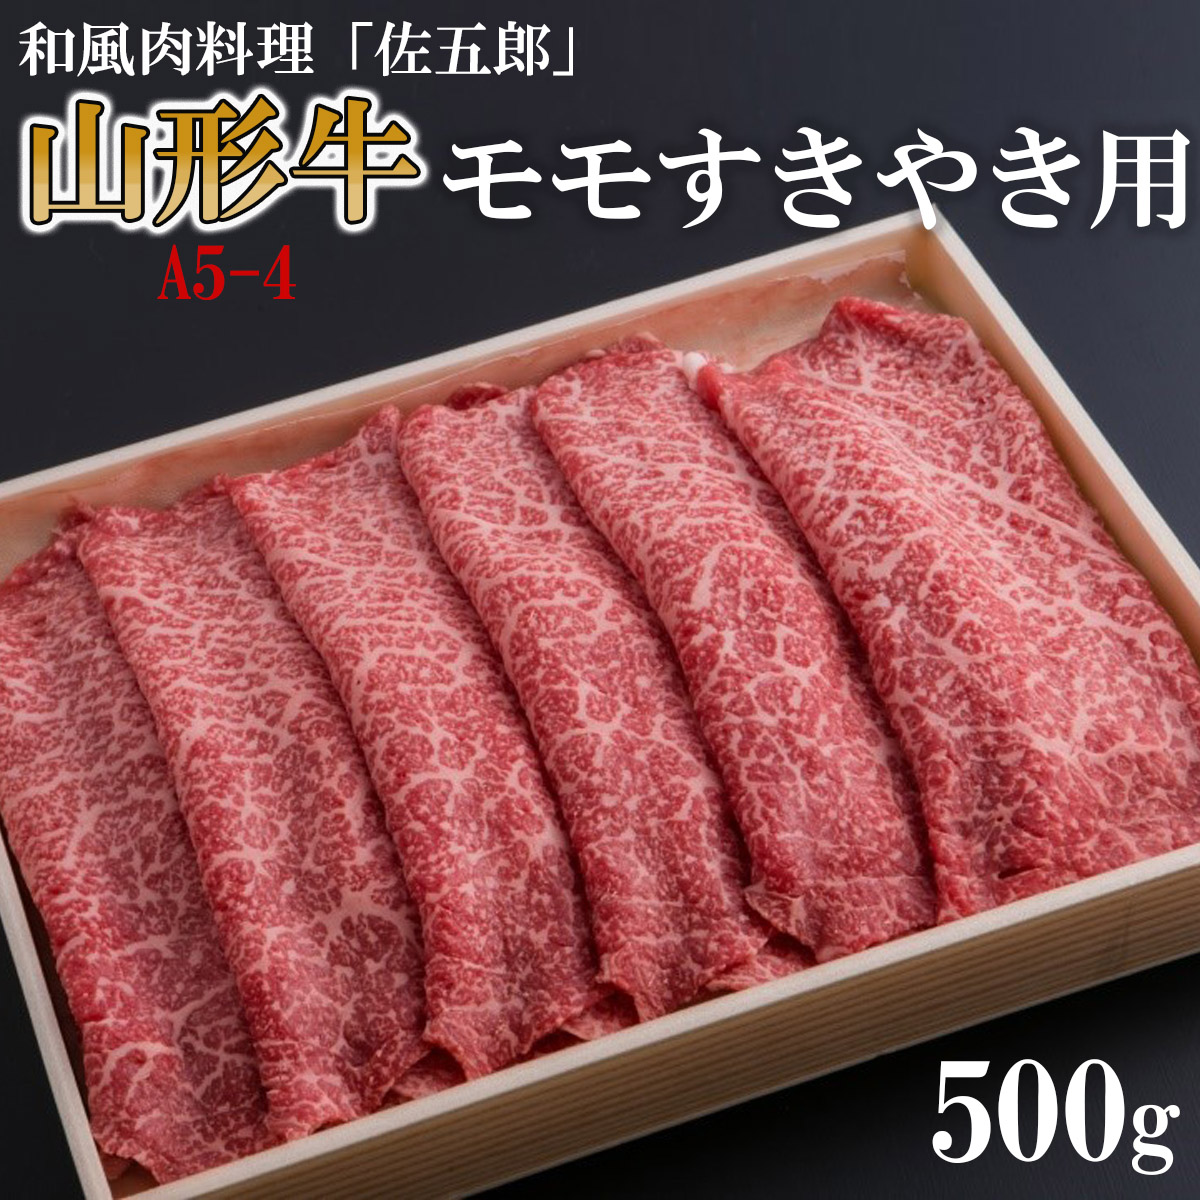 和風肉料理「佐五郎」山形牛A5-4 モモすきやき用 500g FZ19-269